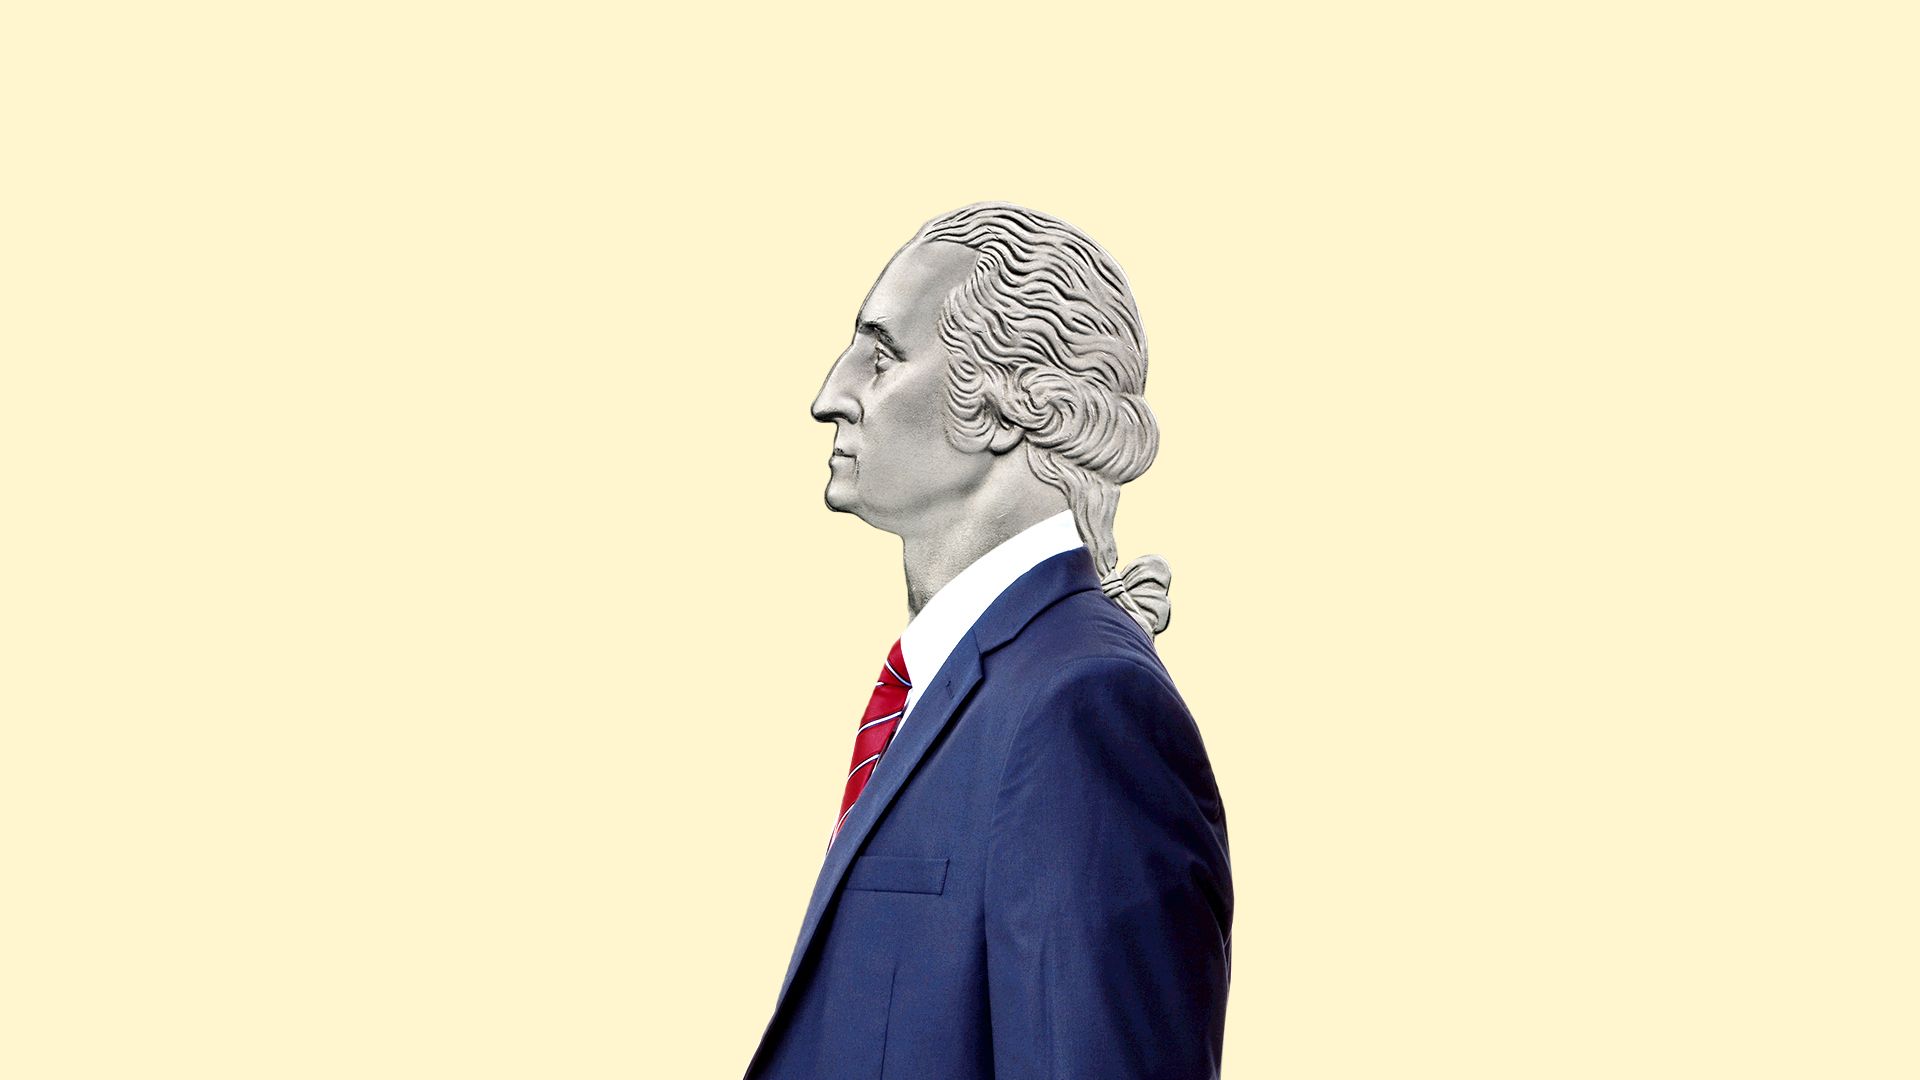 George Washington as a greedy CEO